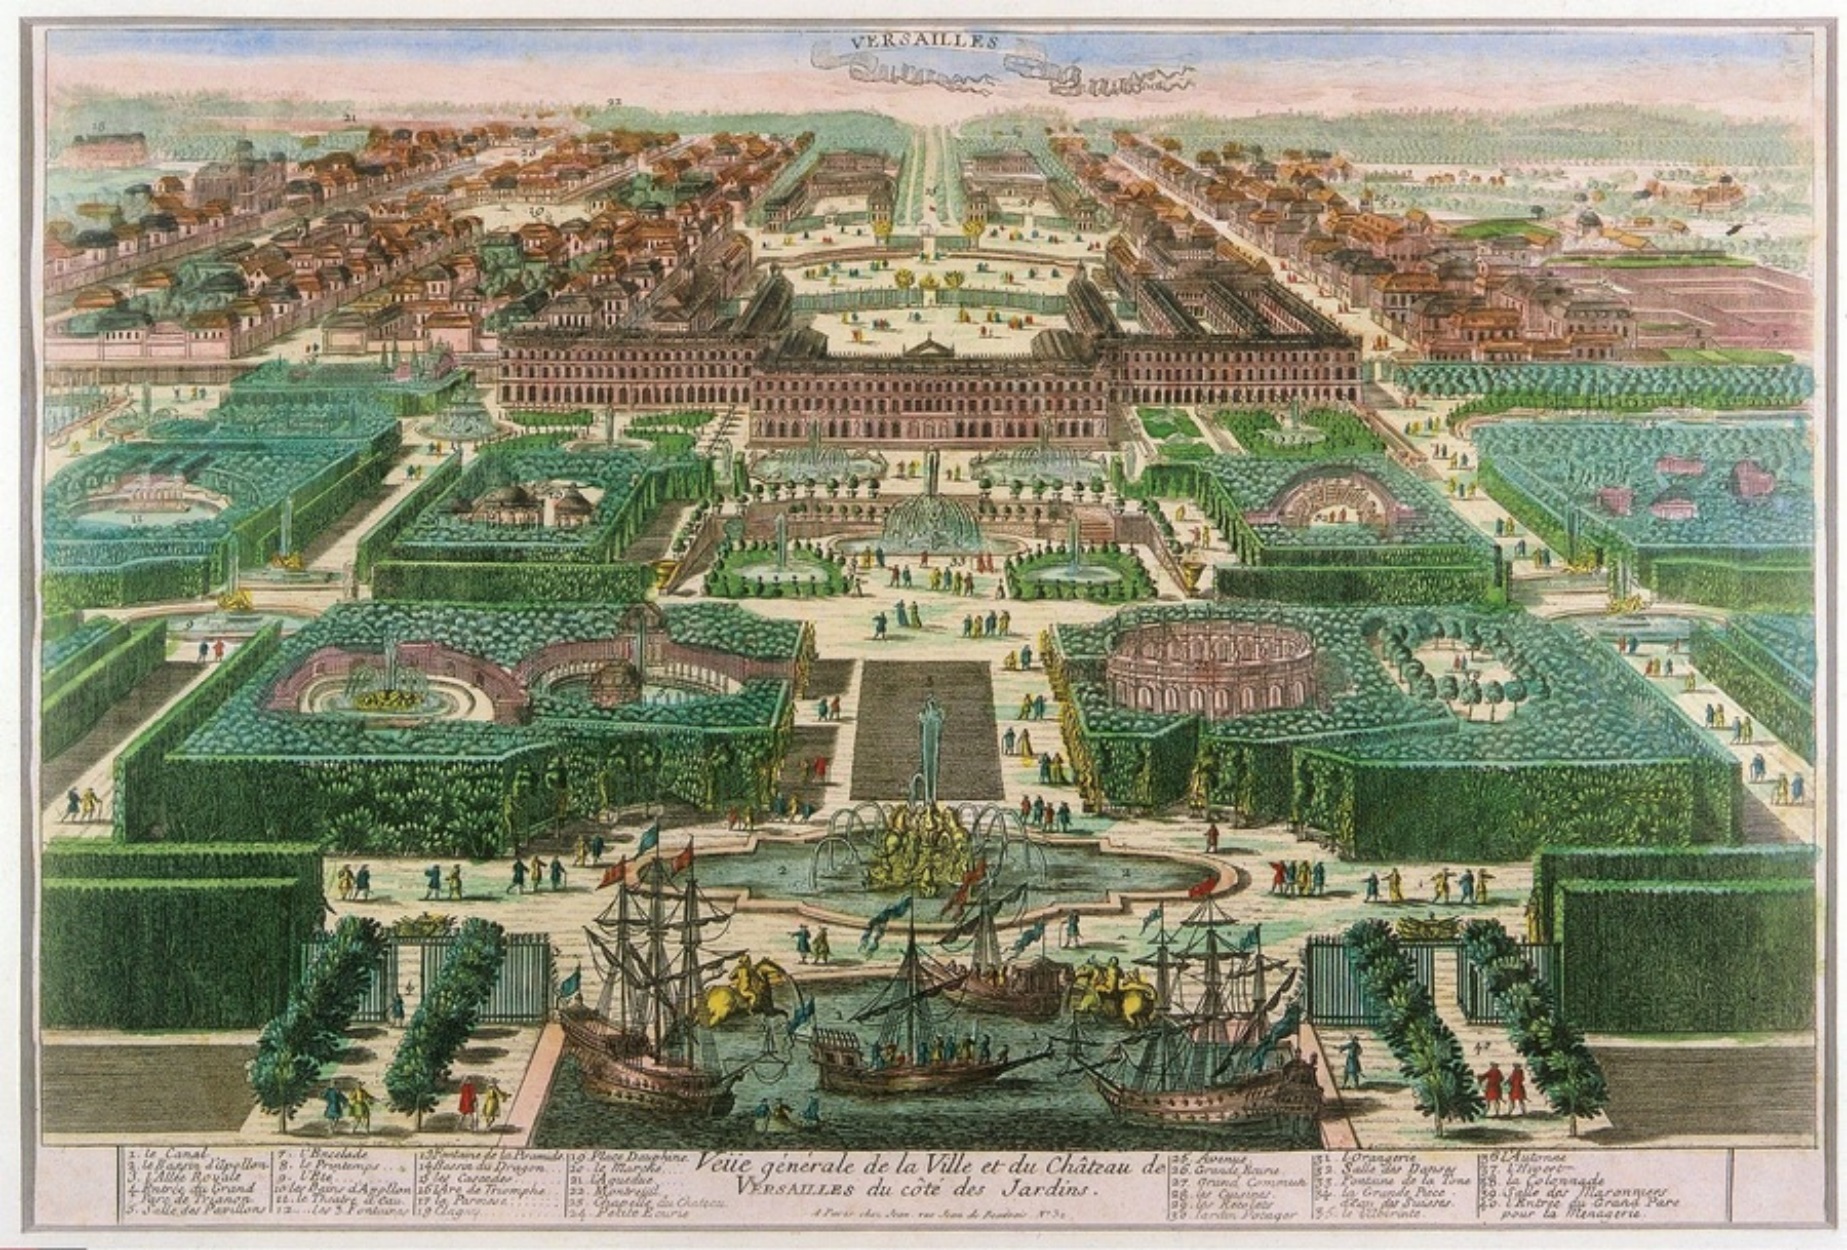 Βερσαλλίες: Ένα παλάτι τόσο ακριβό που έφερε την επανάσταση